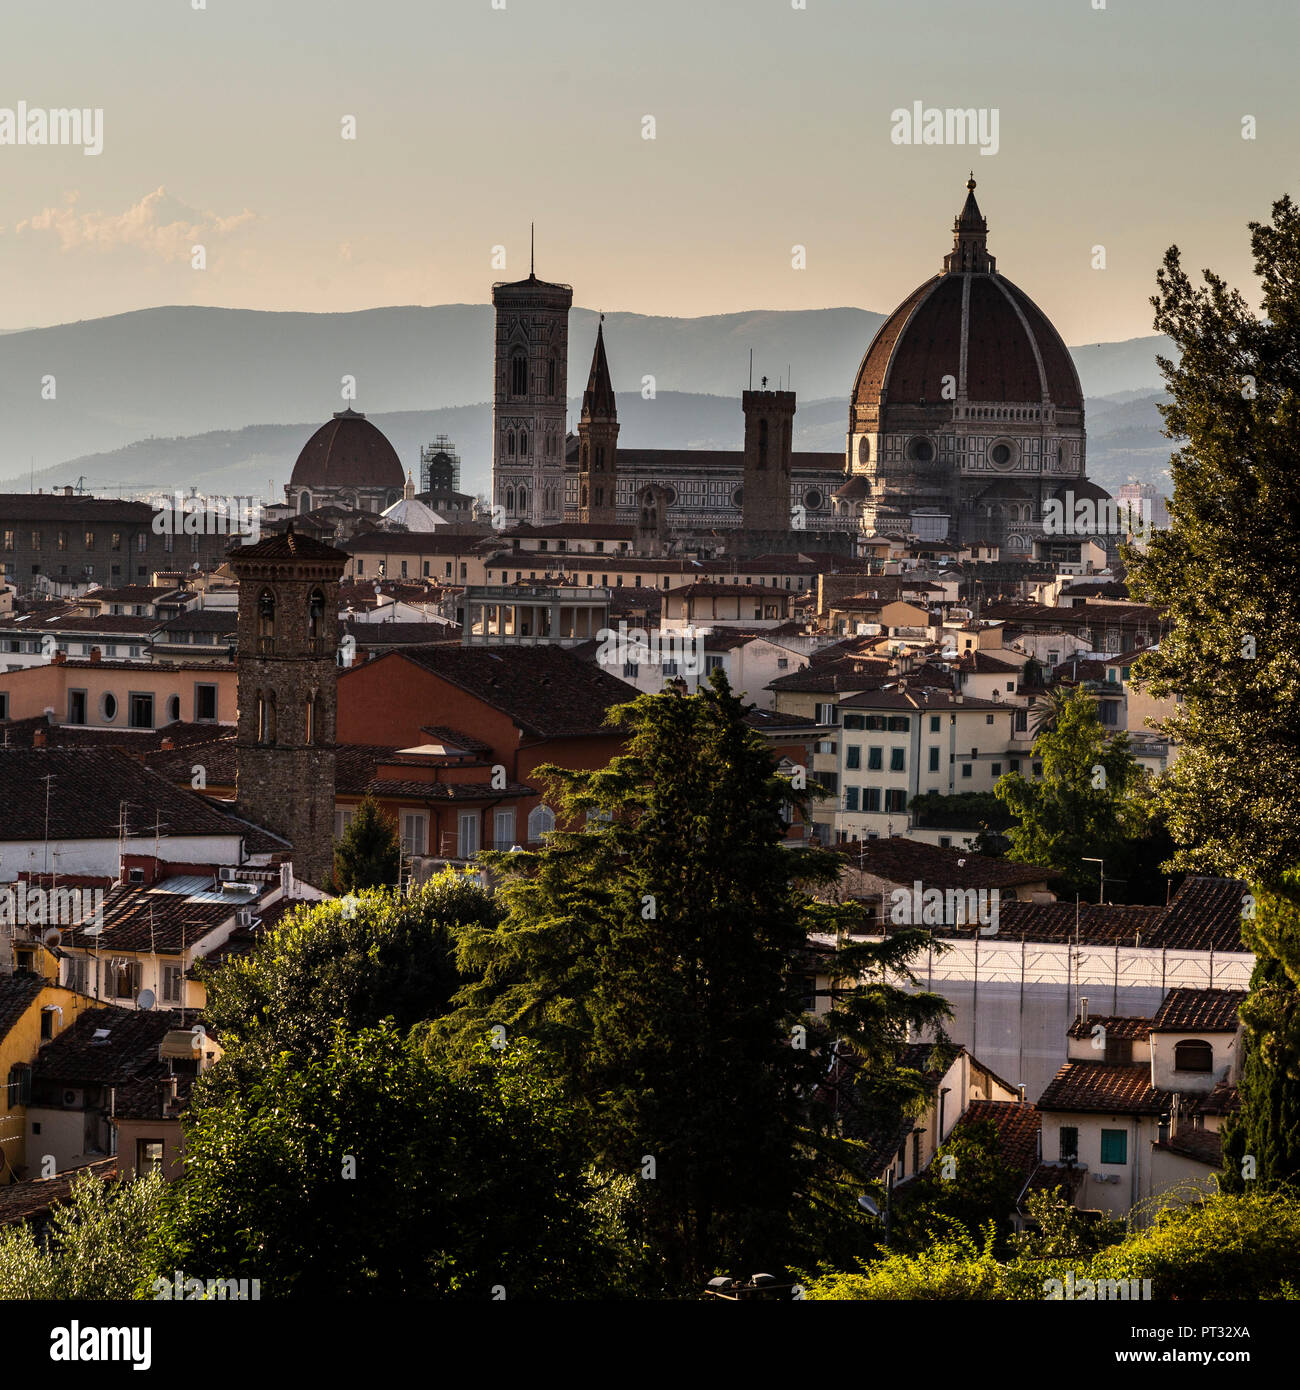 Europa, Italien, Toskana, Florenz - Florenz Kathedrale - Kathedrale Santa Maria del Fiore Stockfoto